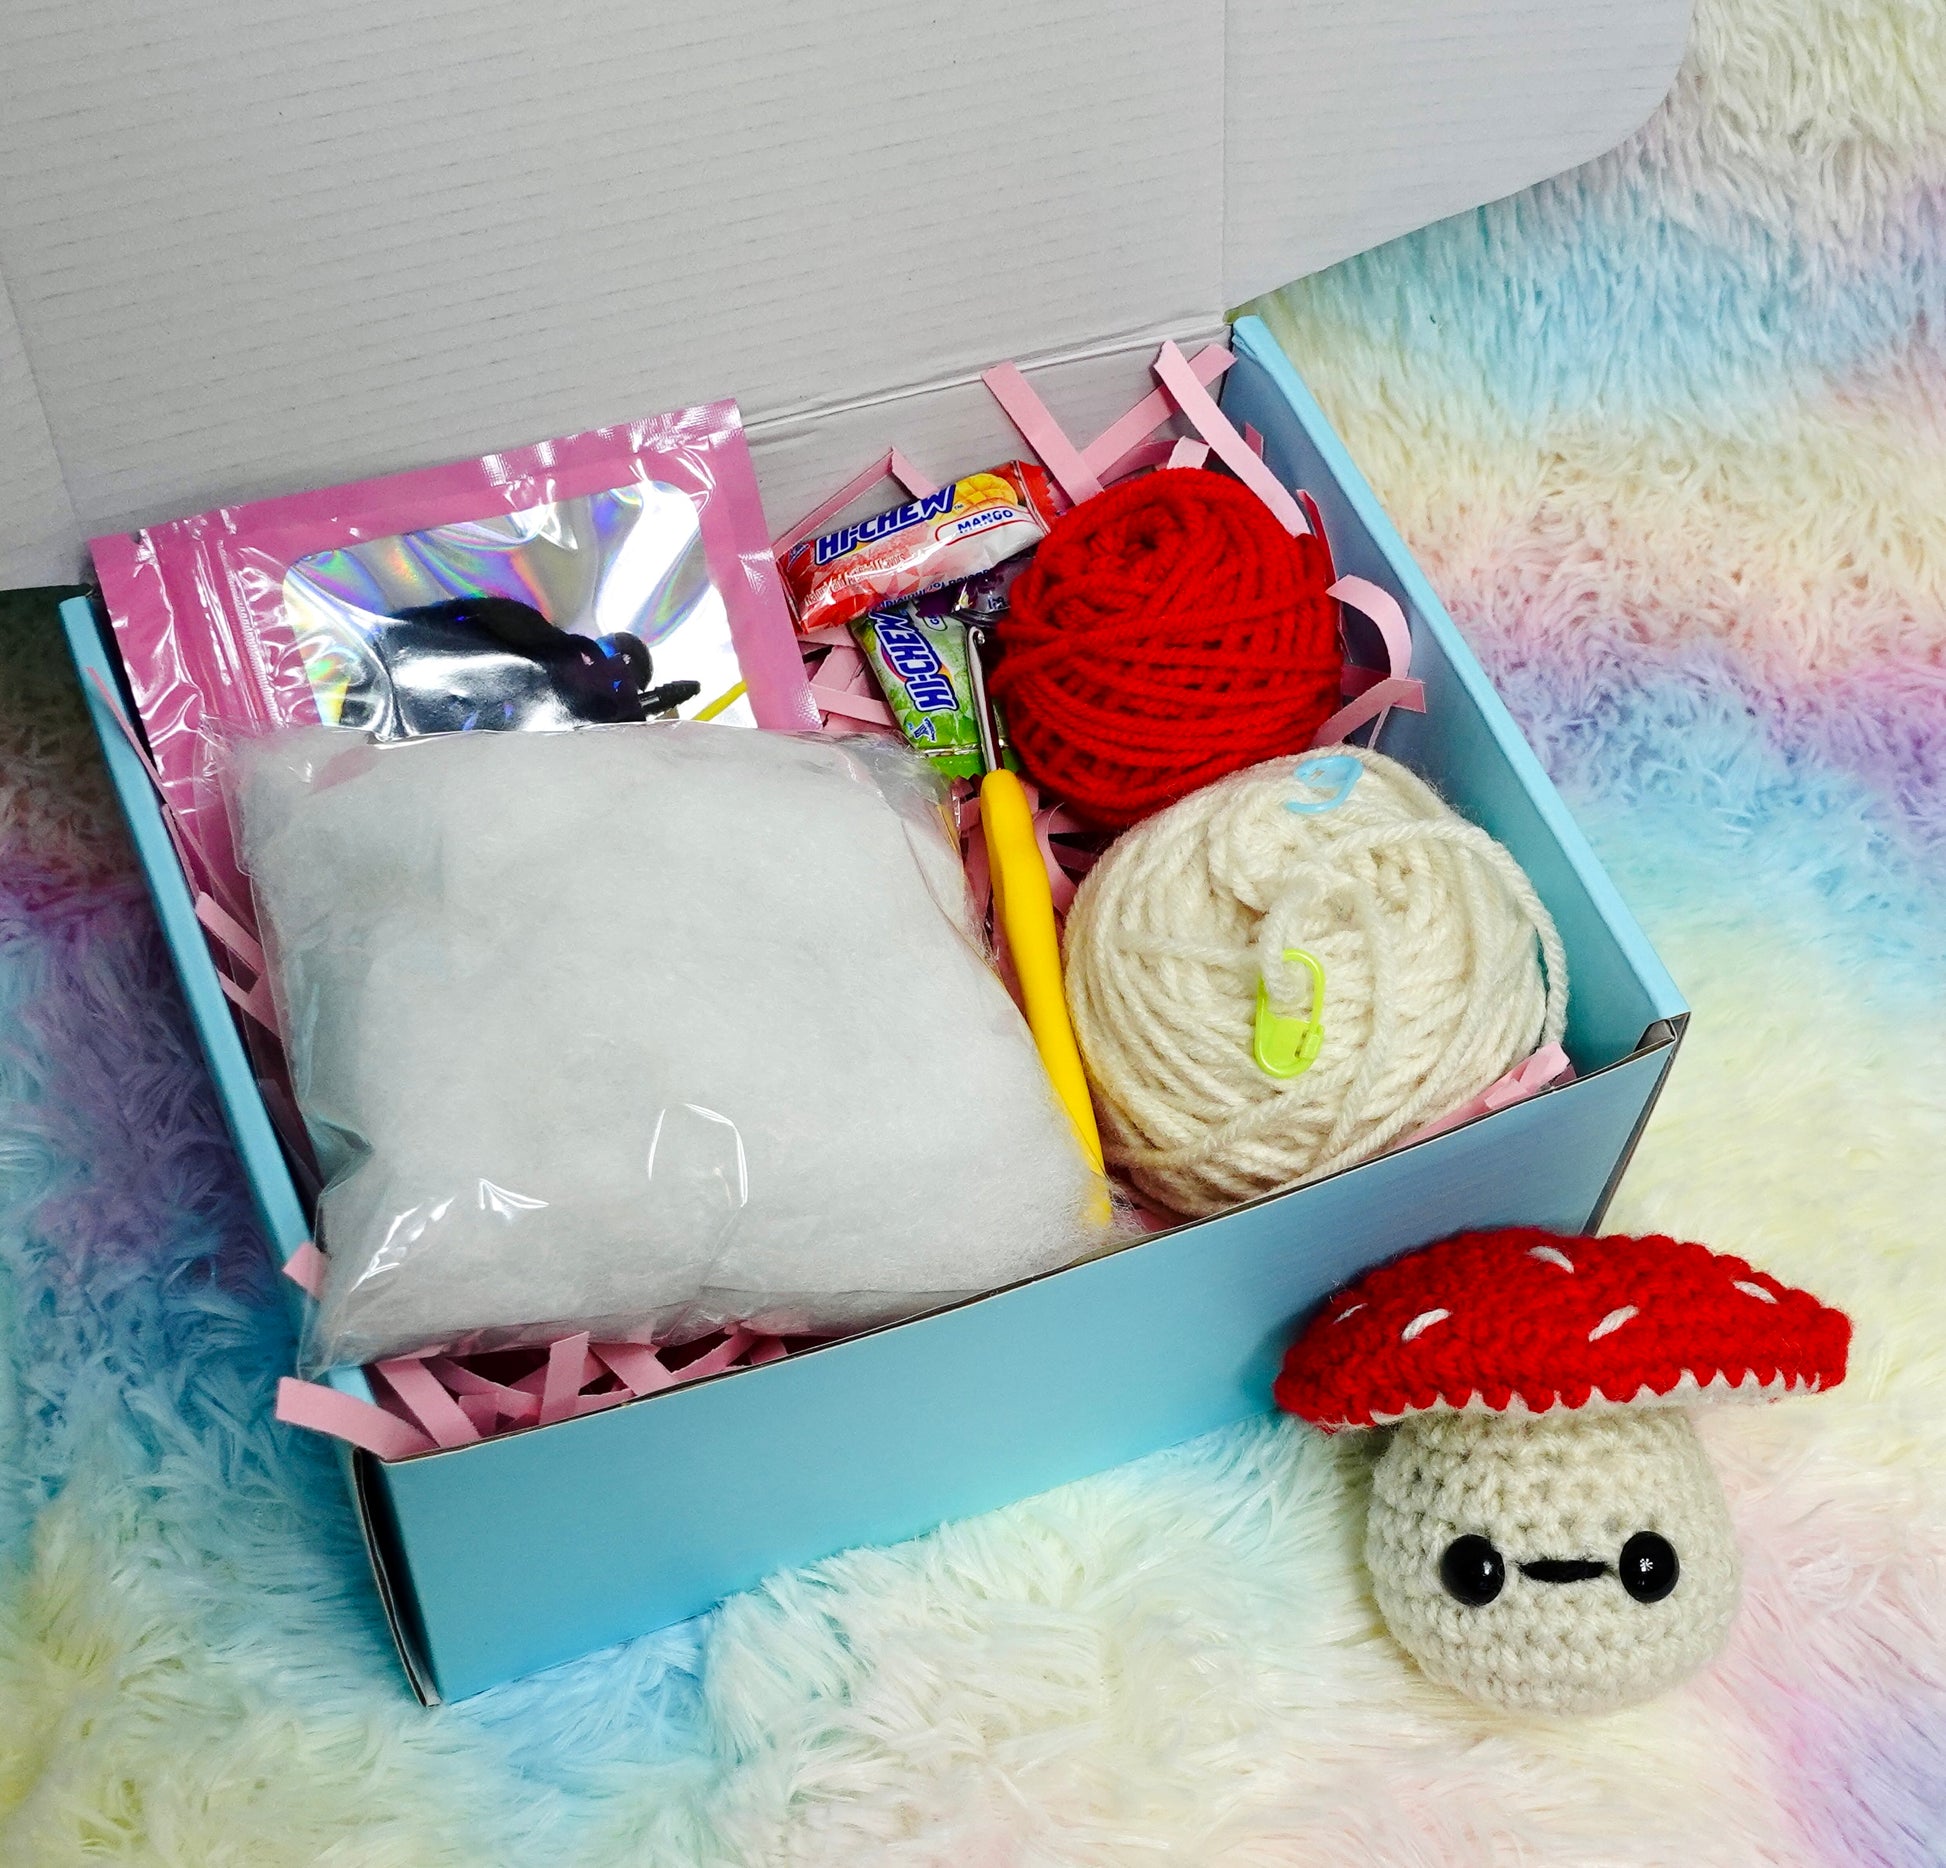 Crochetobe Crochet Kit for Beginners - Mushroom Crochet Kit - crochet envy